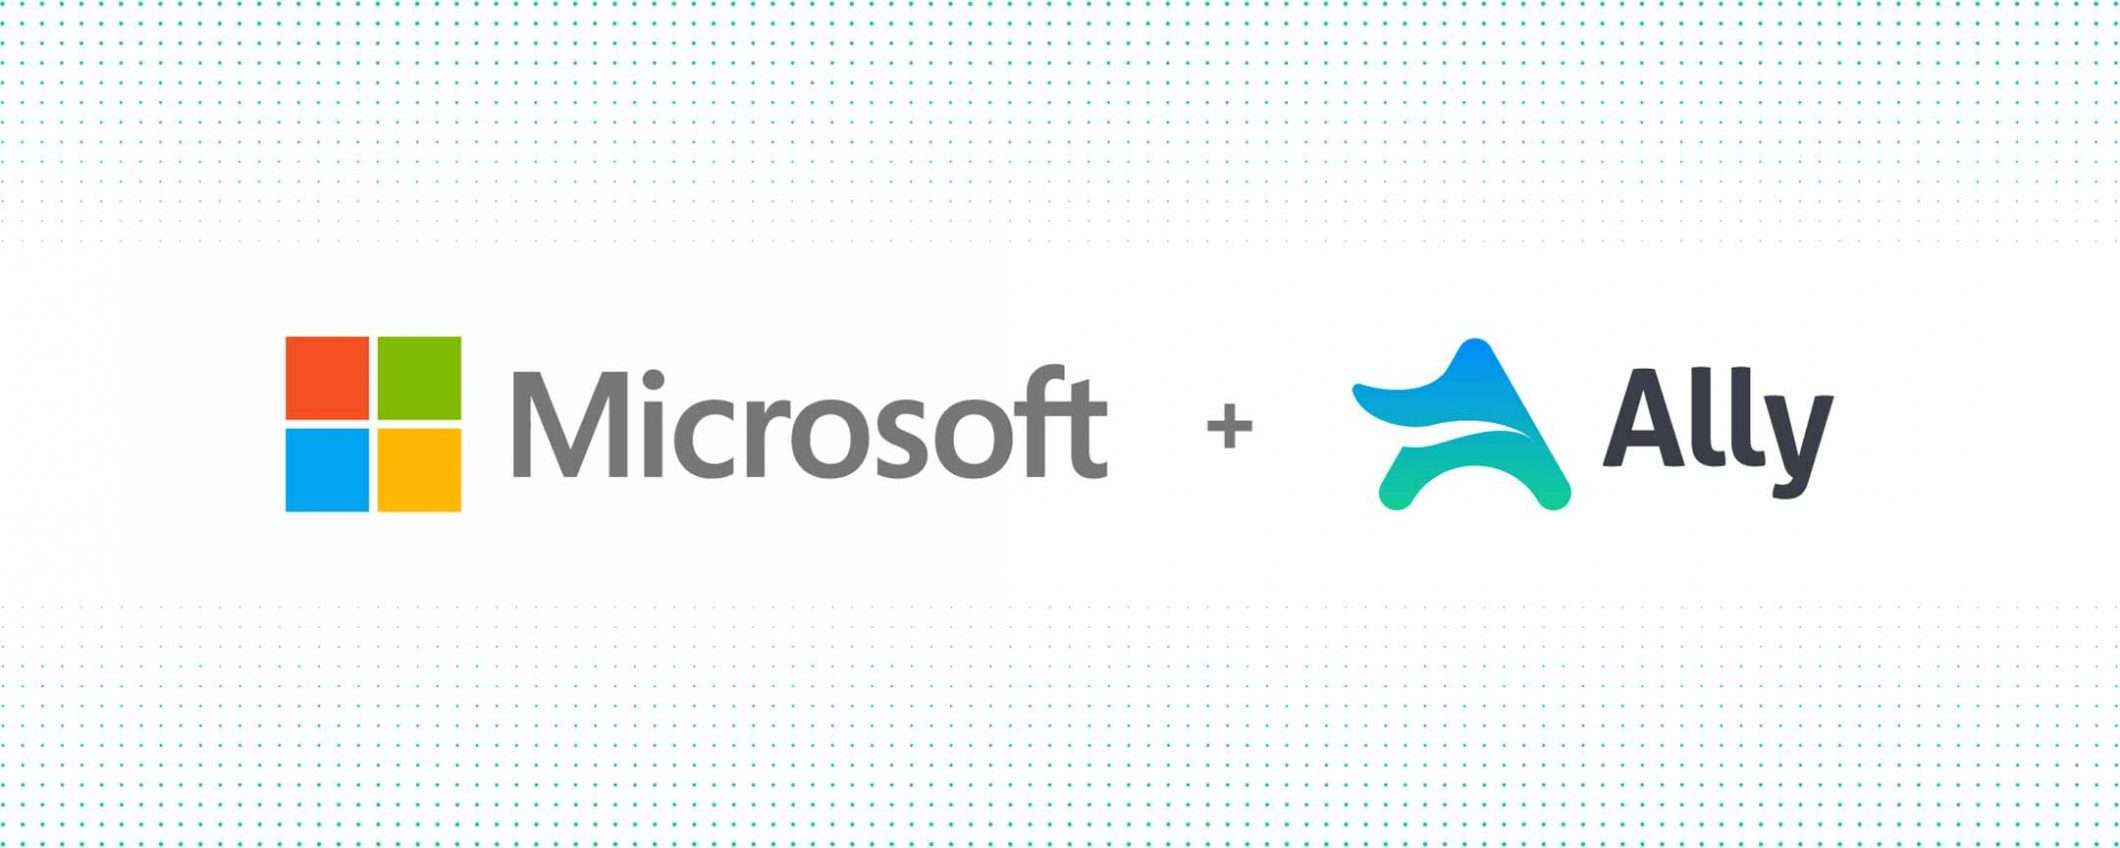 Ally è la nuova acquisizione di Microsoft per Viva